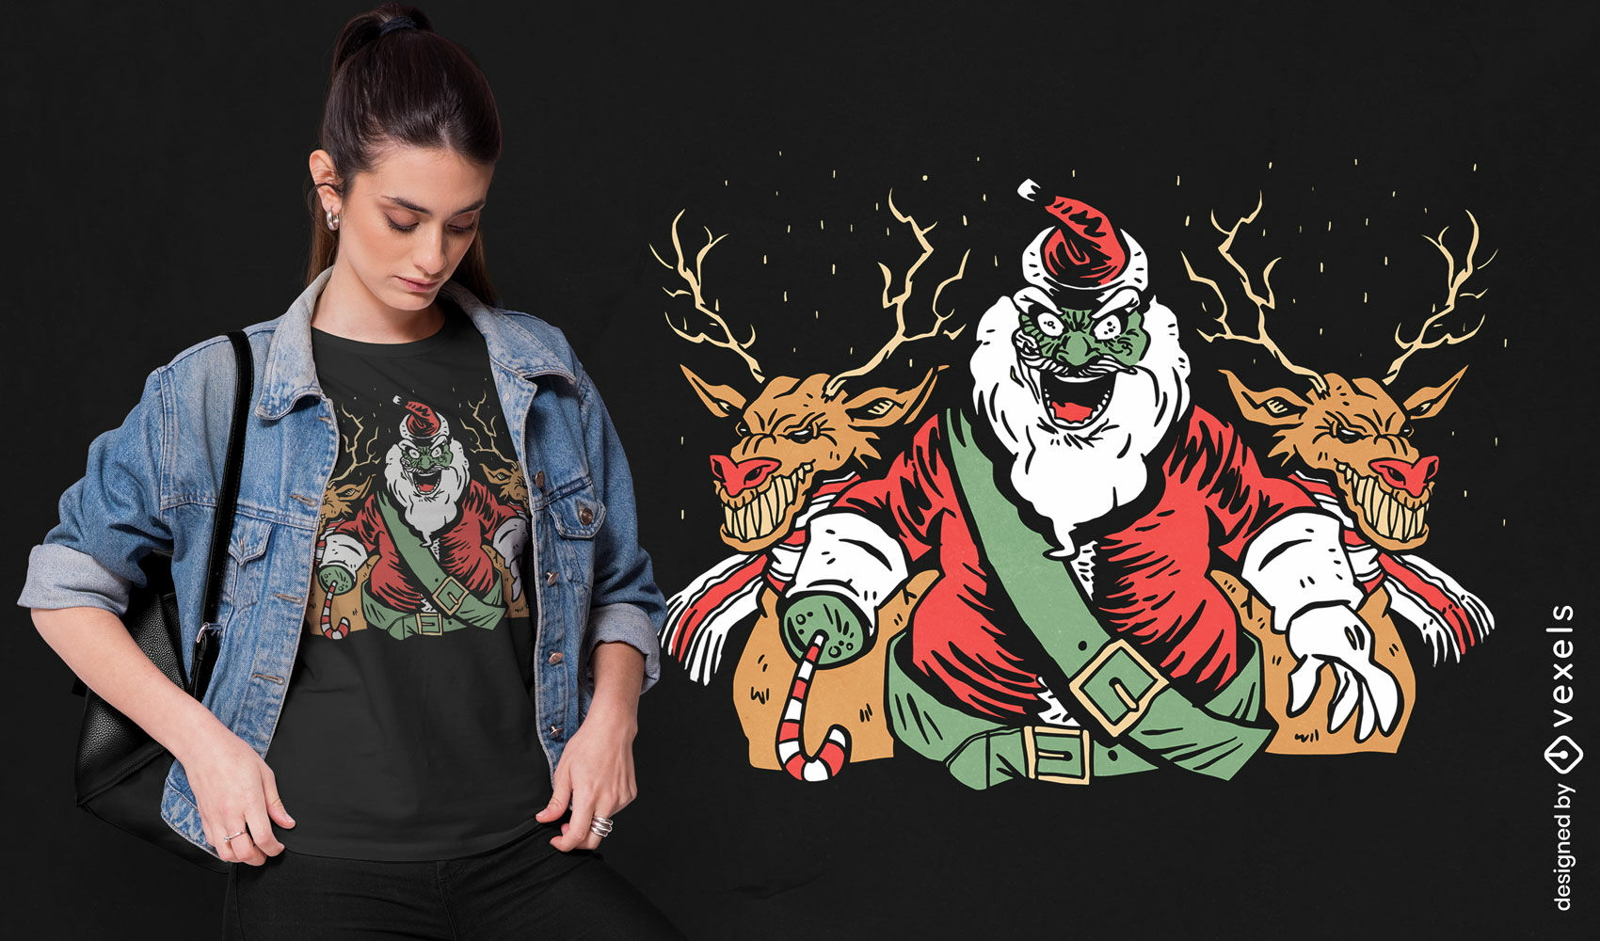 Creepy Santa anti - design de t-shirt de Natal